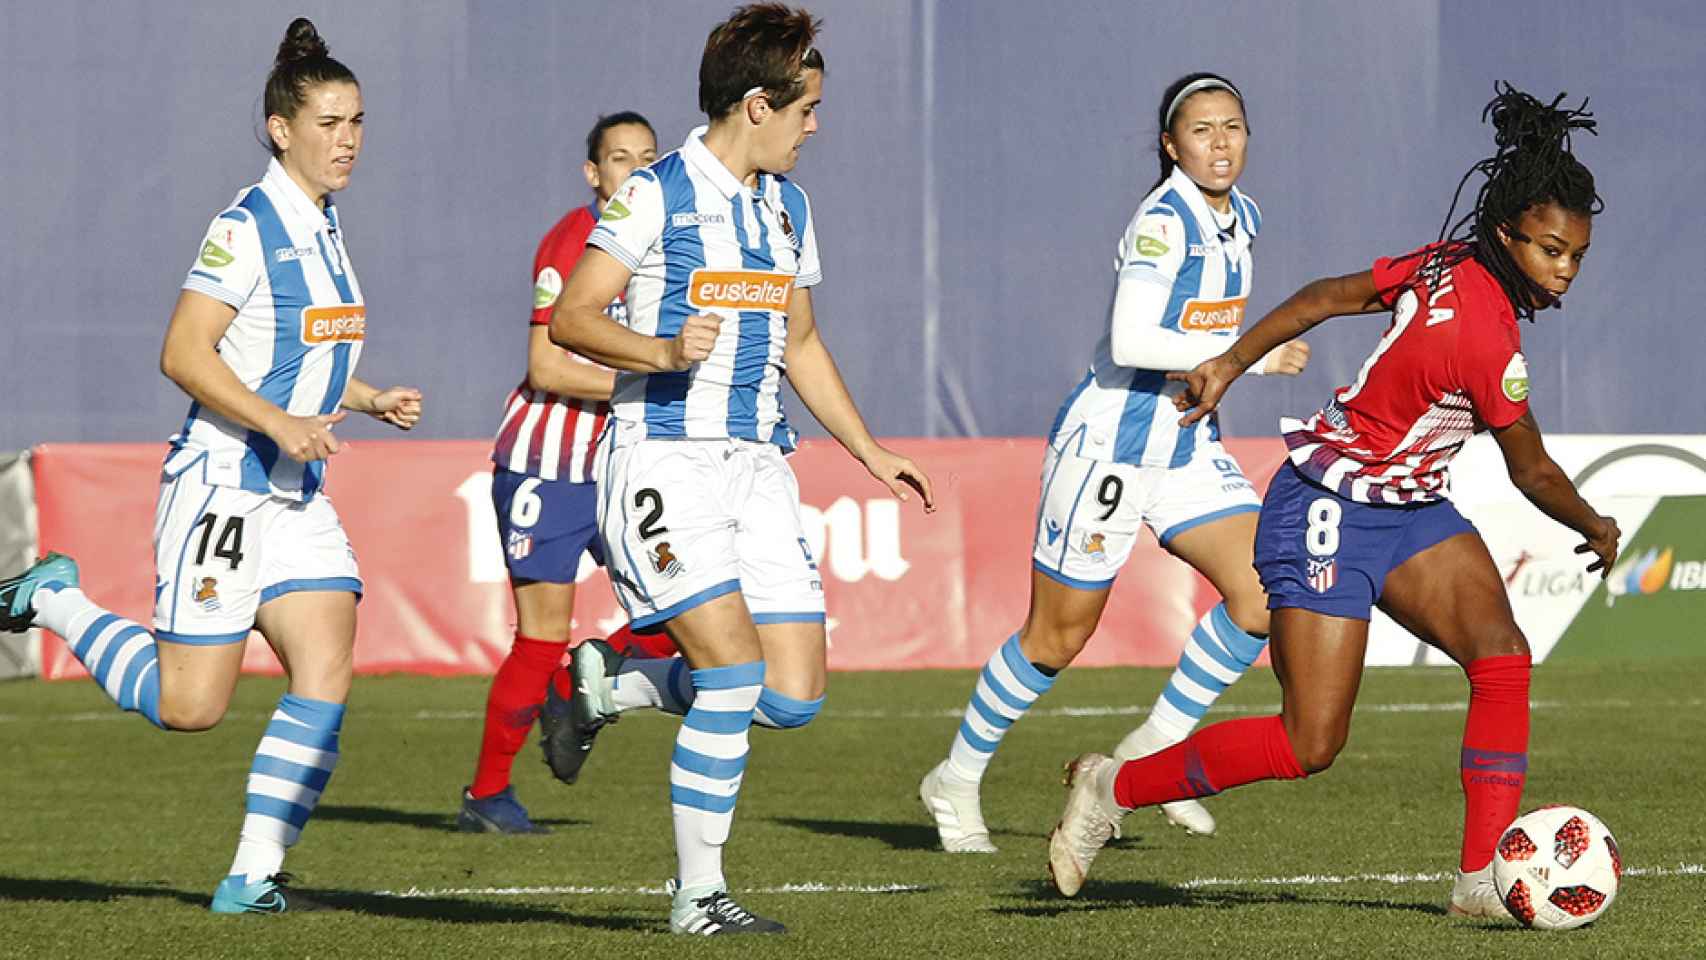 Atlético de Madrid - Real Sociedad, de fútbol femenino. Foto: atleticodemadrid.com